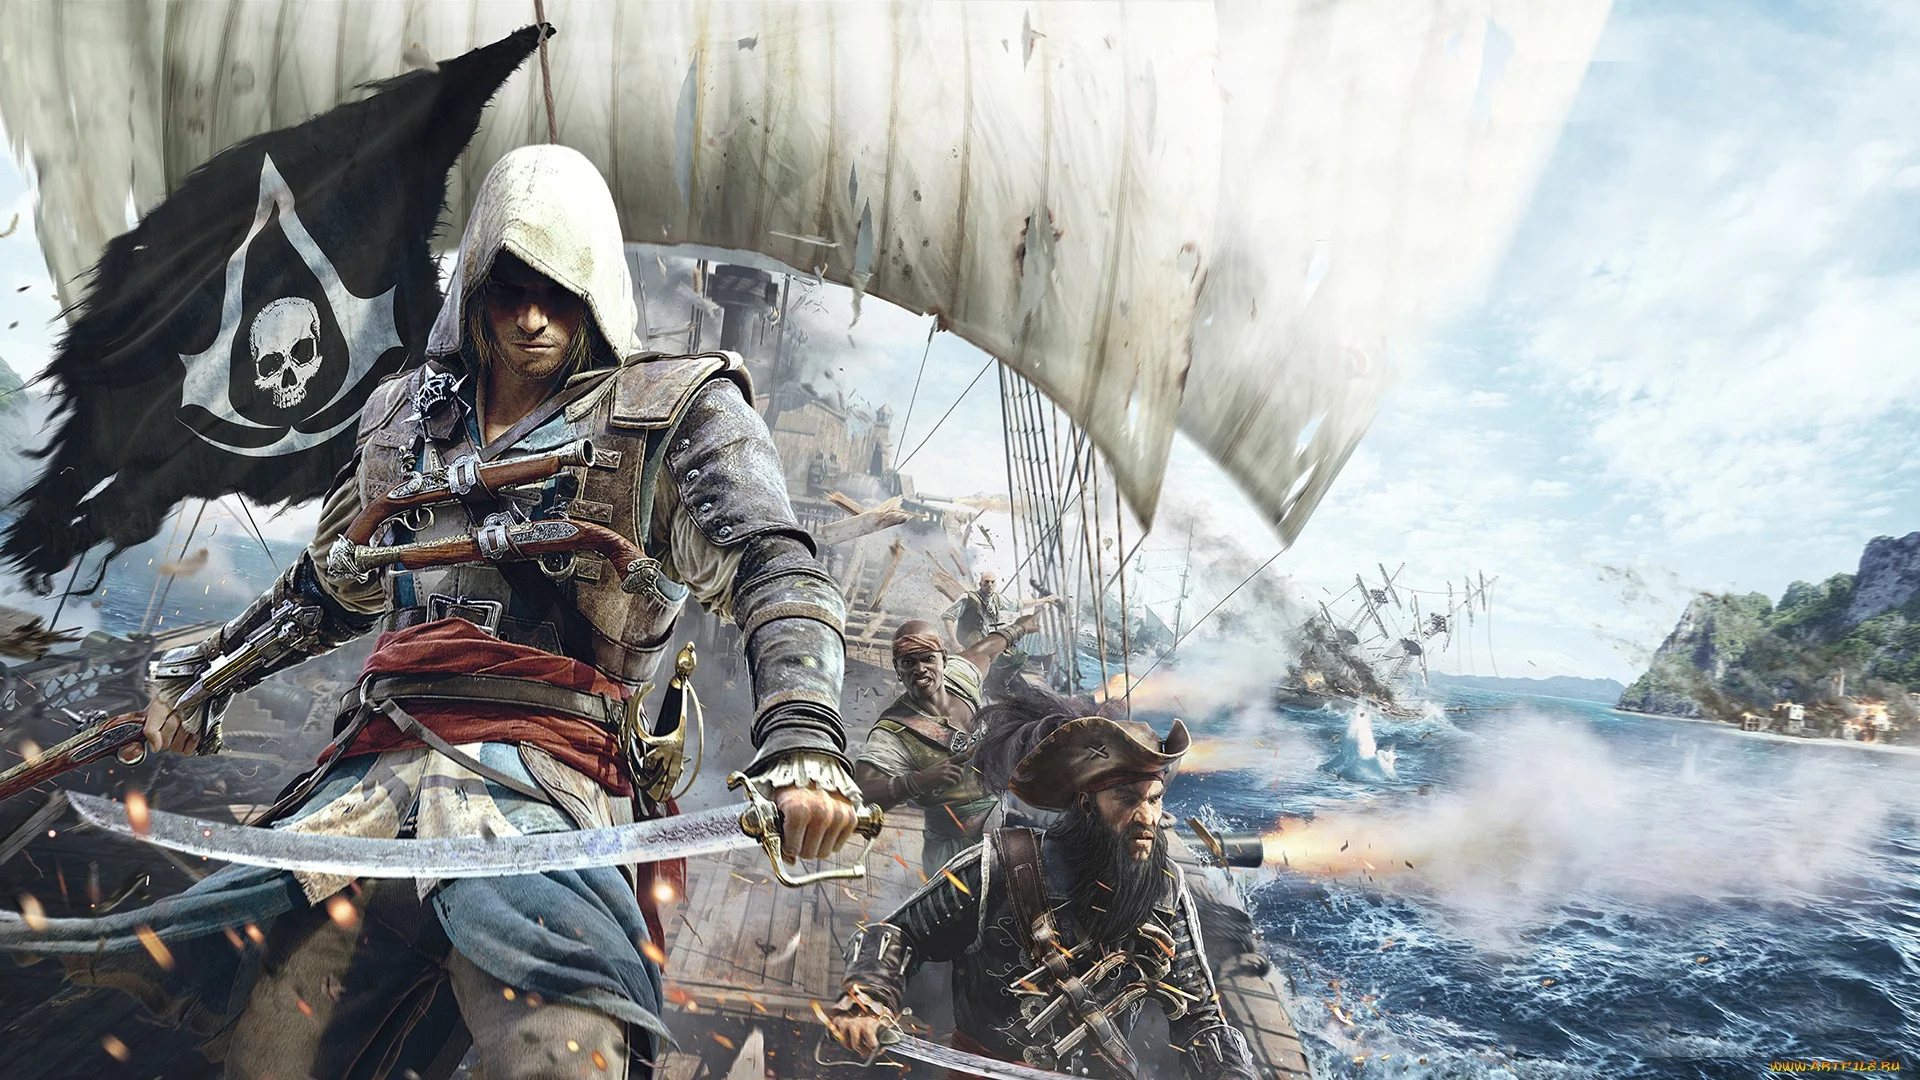 Гифка дня: неунывающий моряк в Assassinʼs Creed IV: Black Flag - фото 1